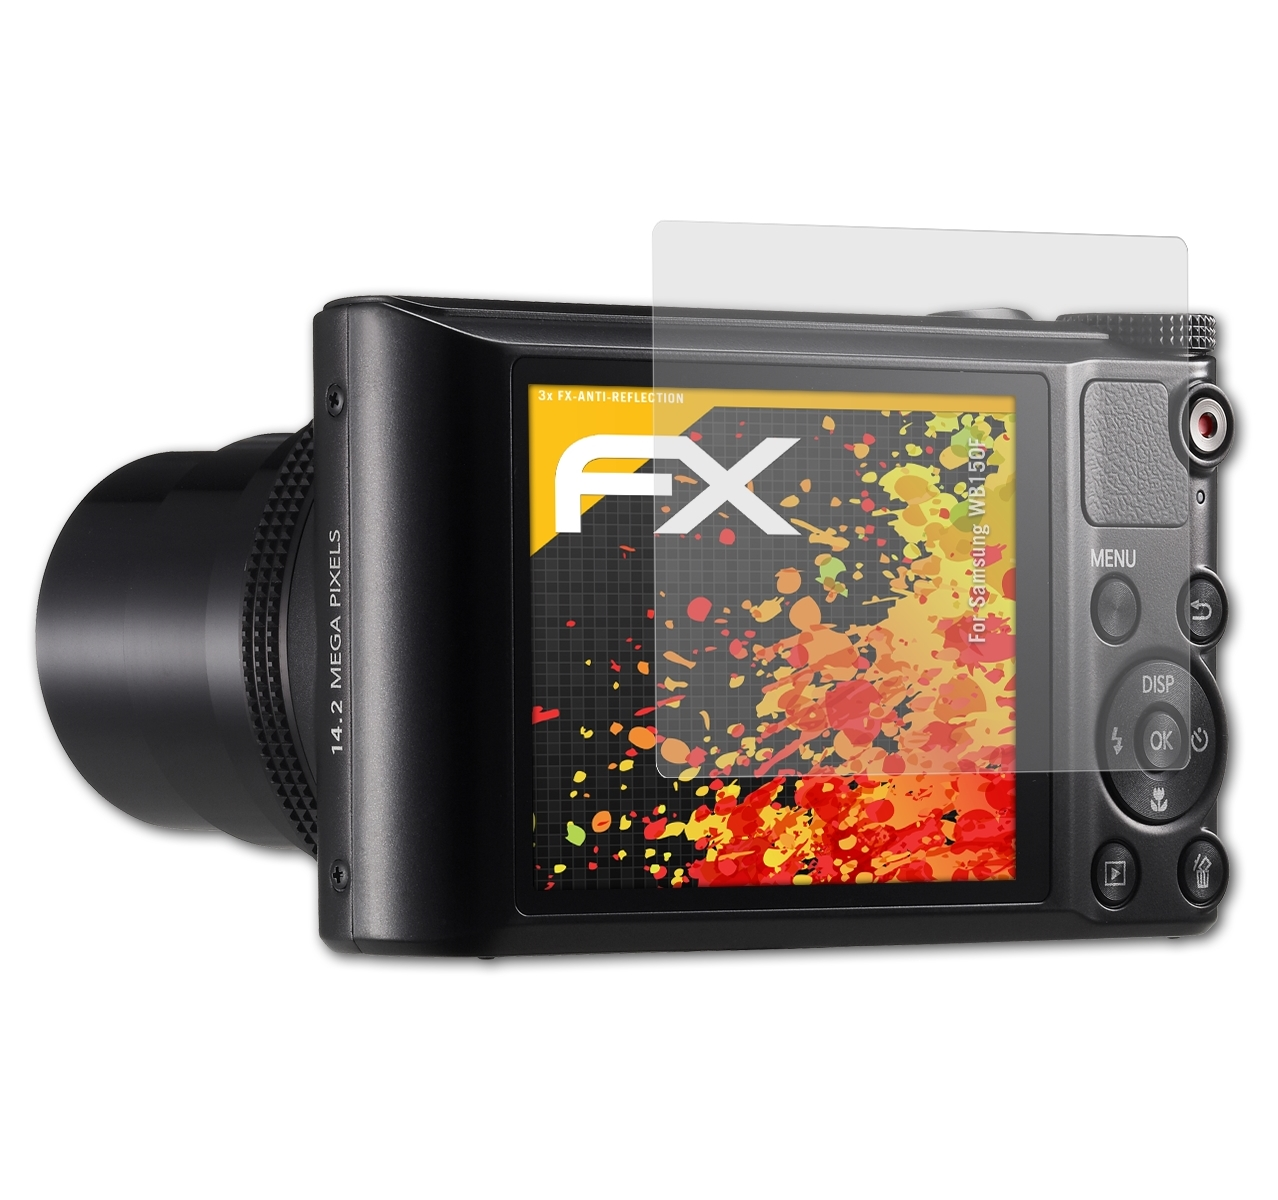 ATFOLIX 3x FX-Antireflex Displayschutz(für Samsung WB150F)